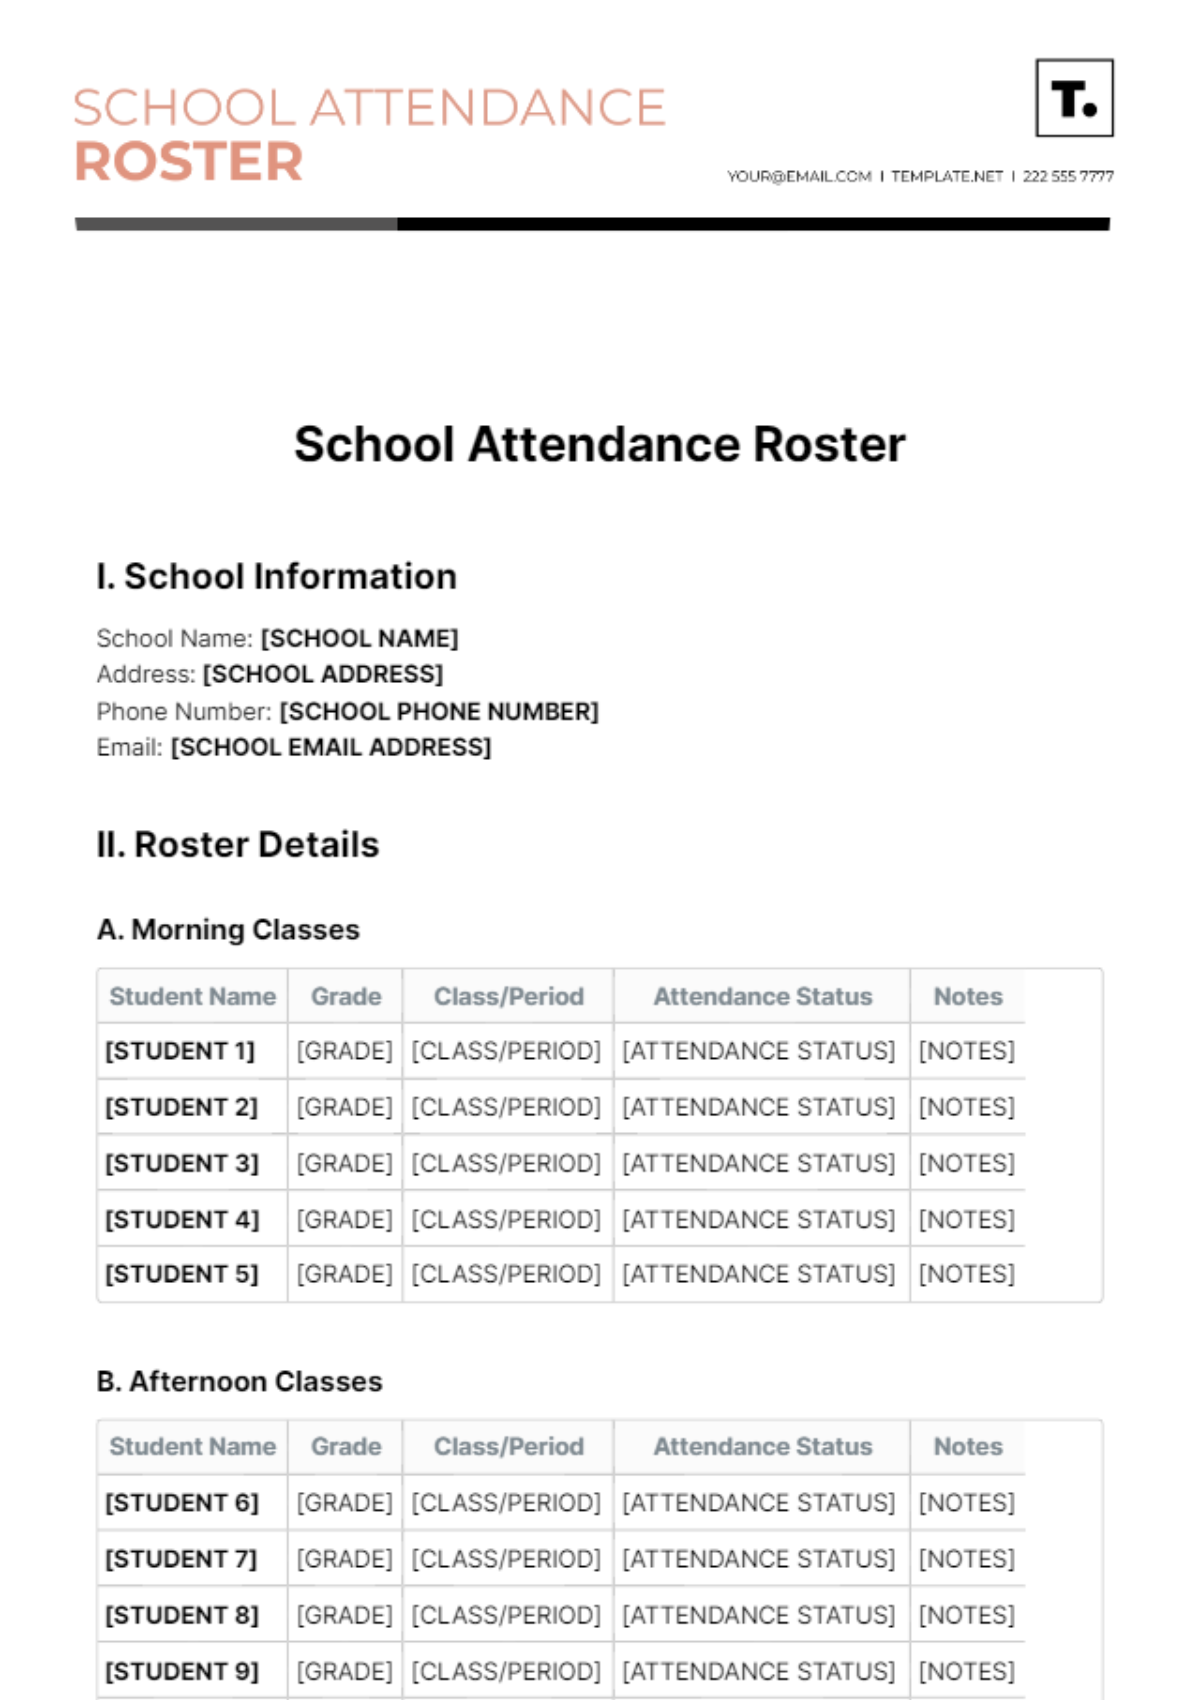 School Attendance Roster Template